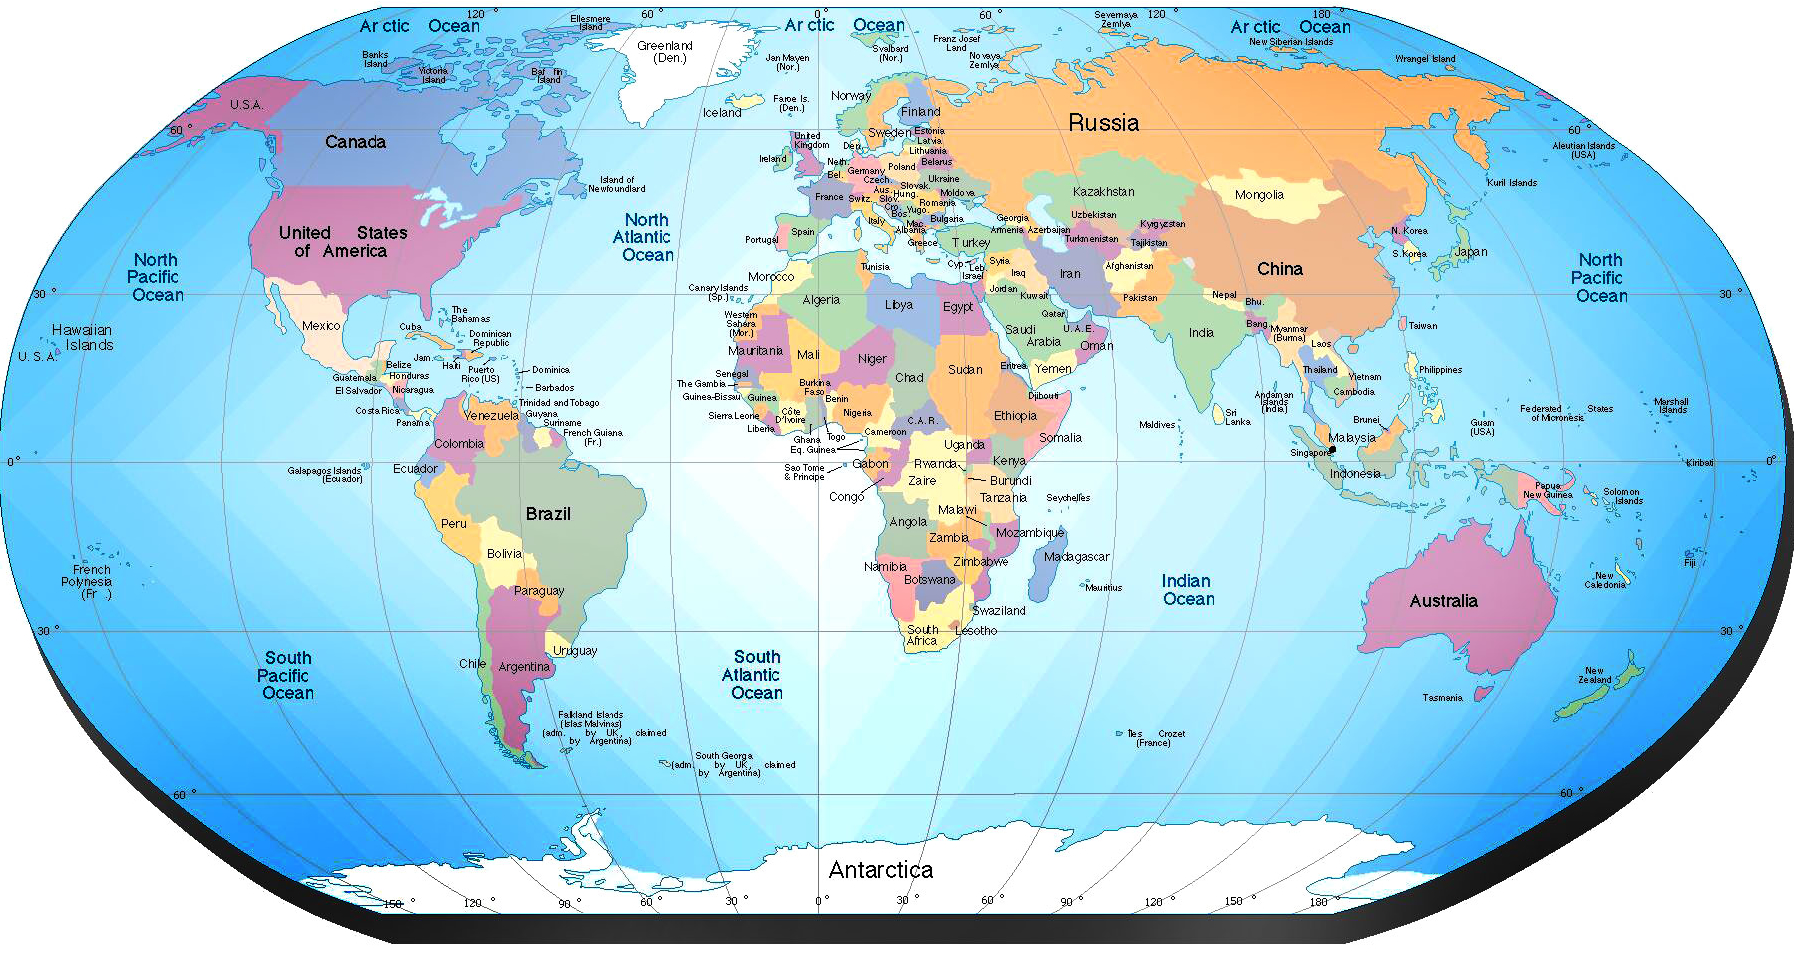 Mapa Politico del Mundo - Tamaño completo